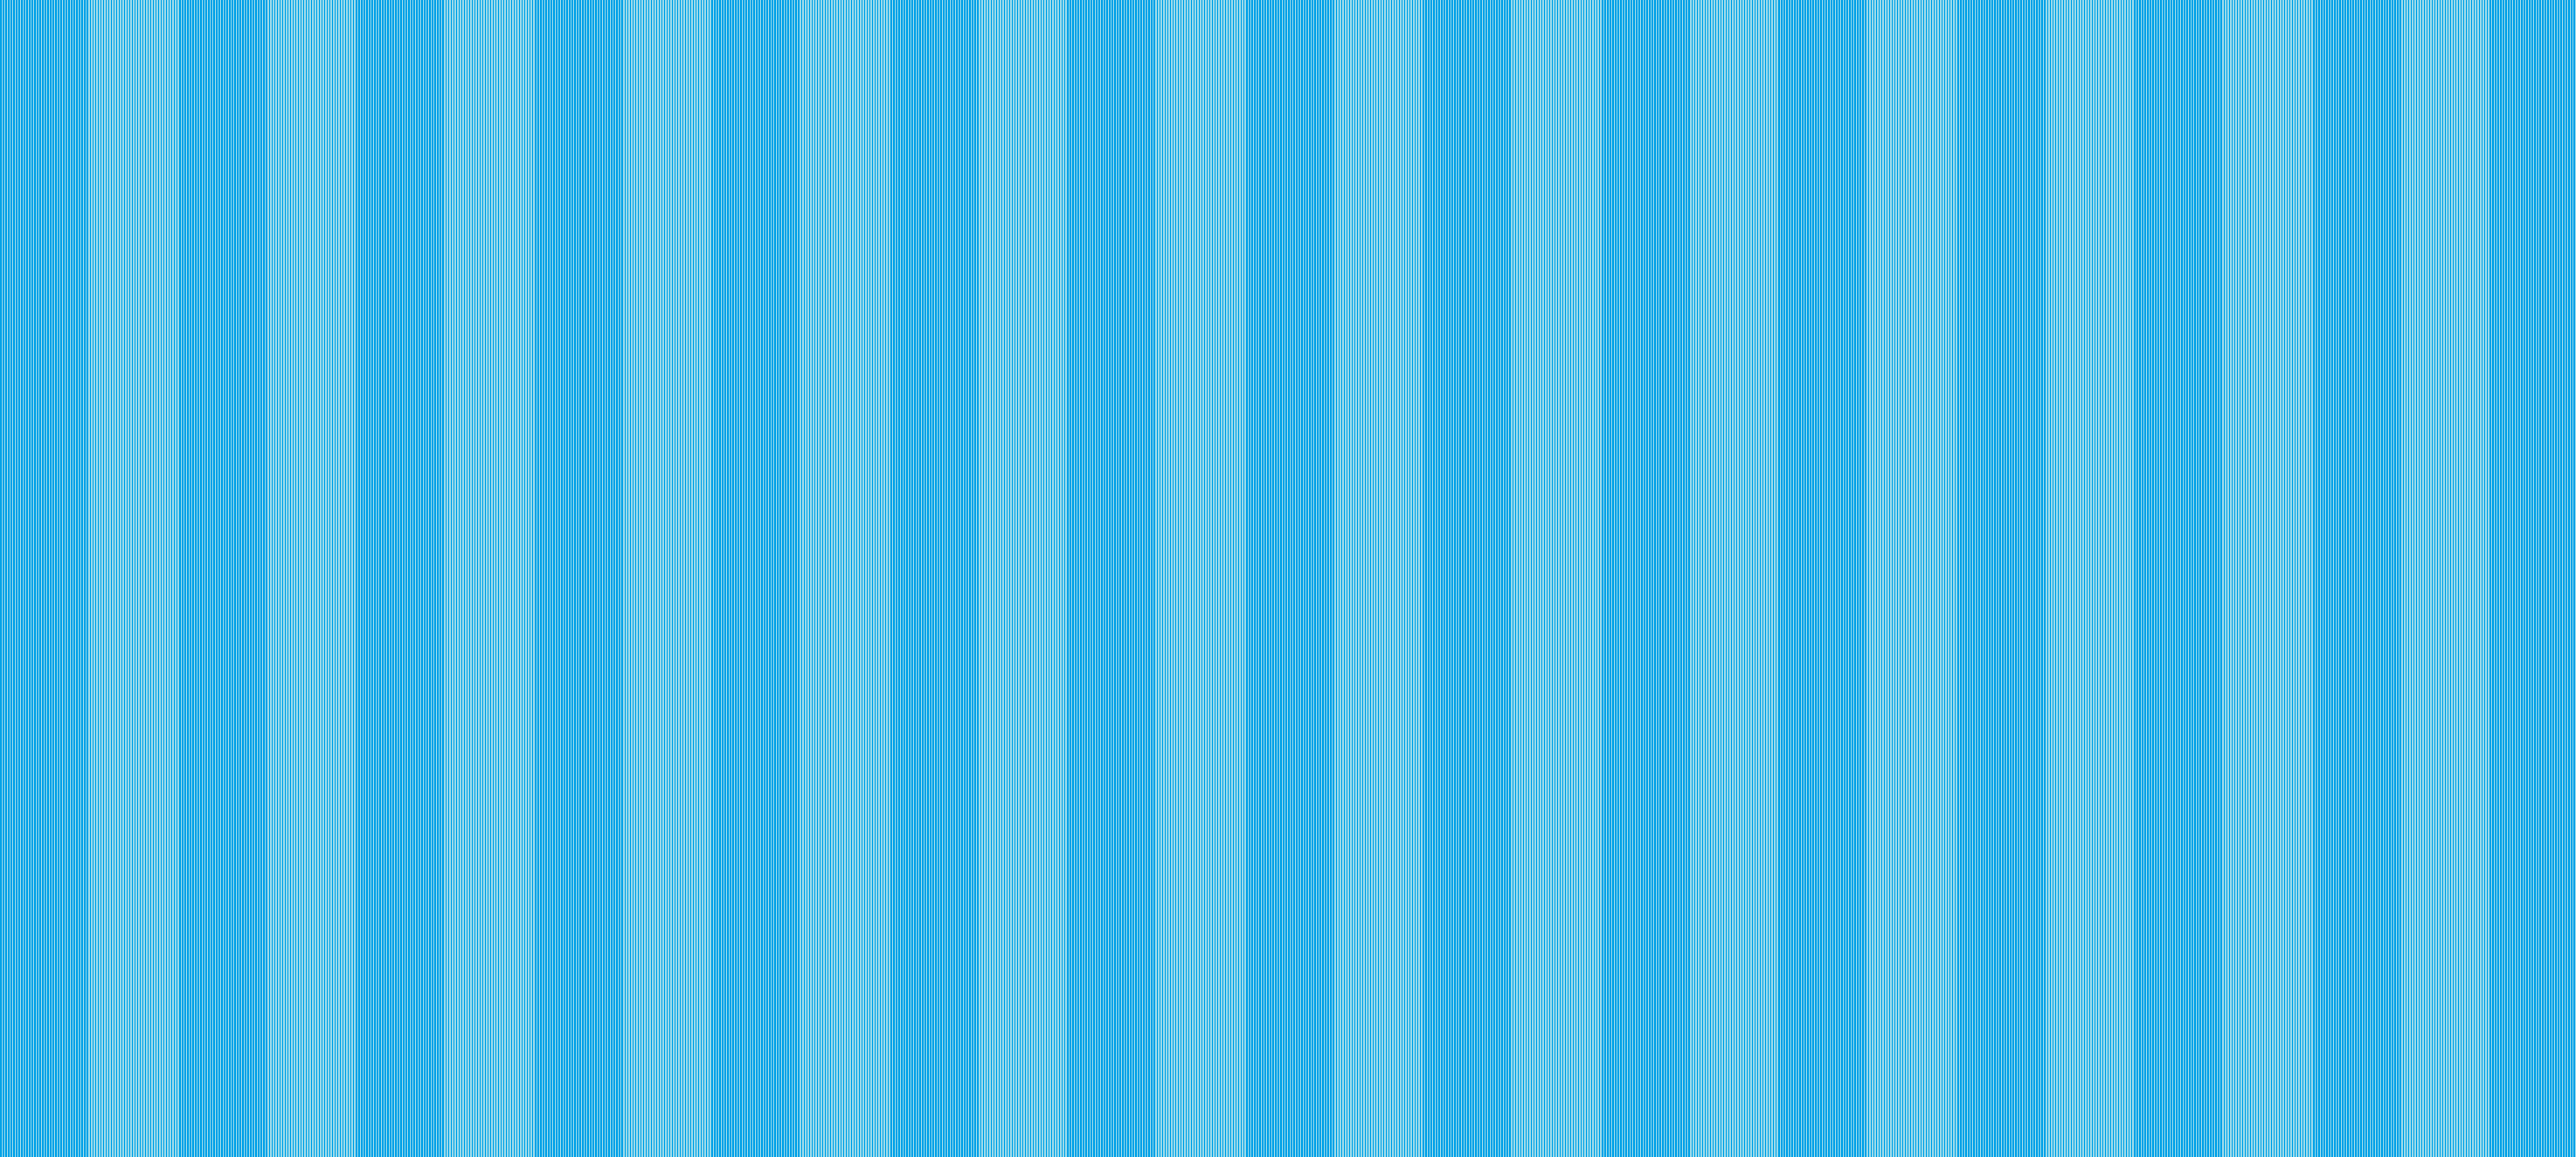 Blue Stripes wallpaper/background by XxDannehxX on DeviantArt